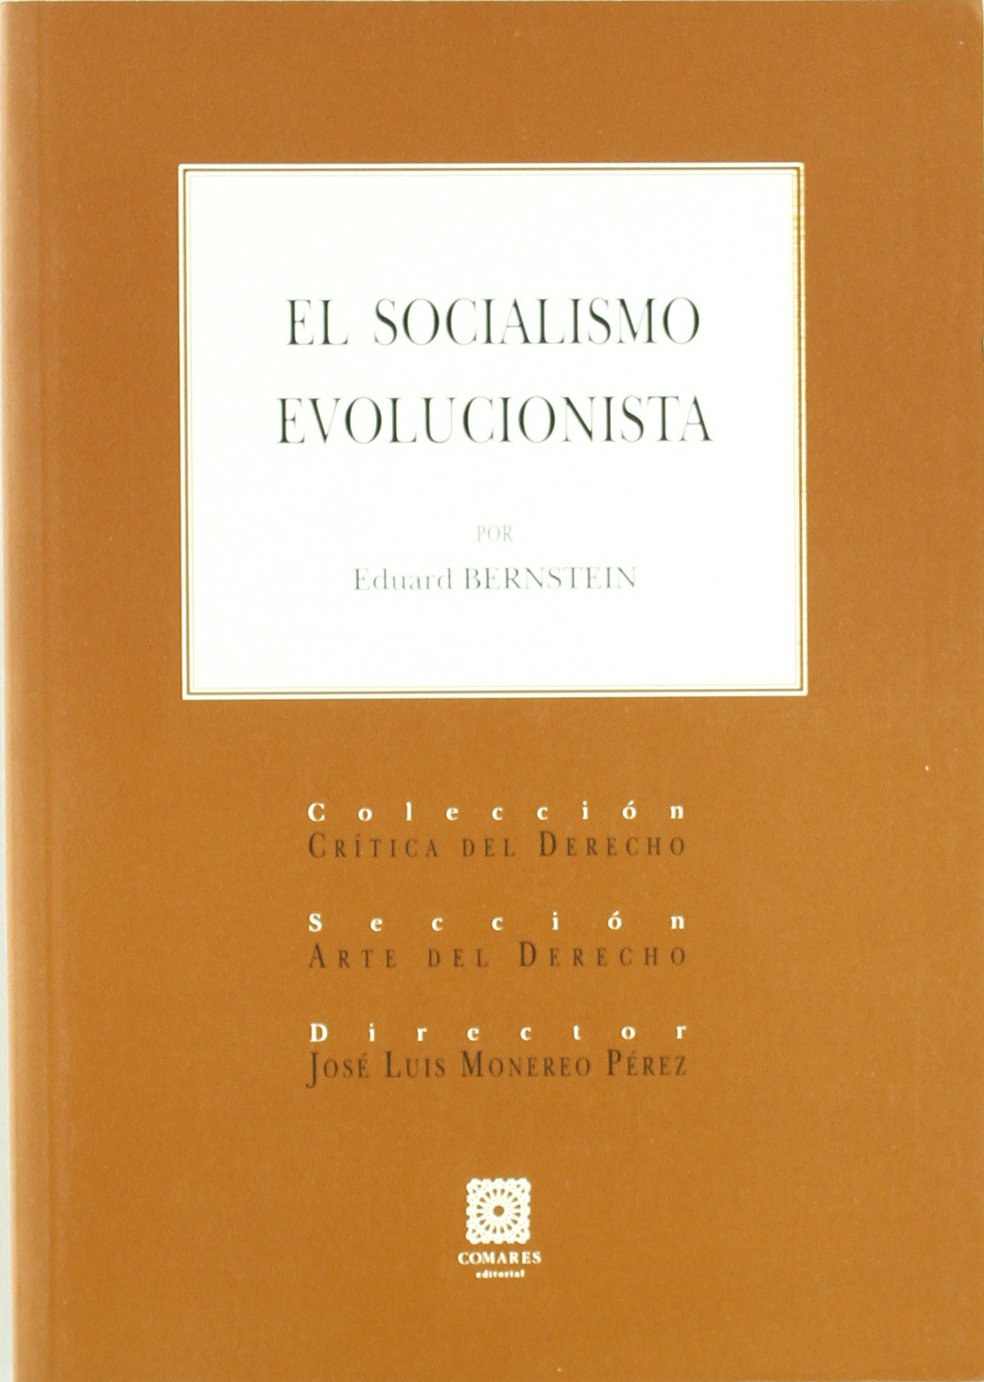 Estudio preliminar, «Fundamentos doctrinales del socialismo reformista: Eduard Bernstein»